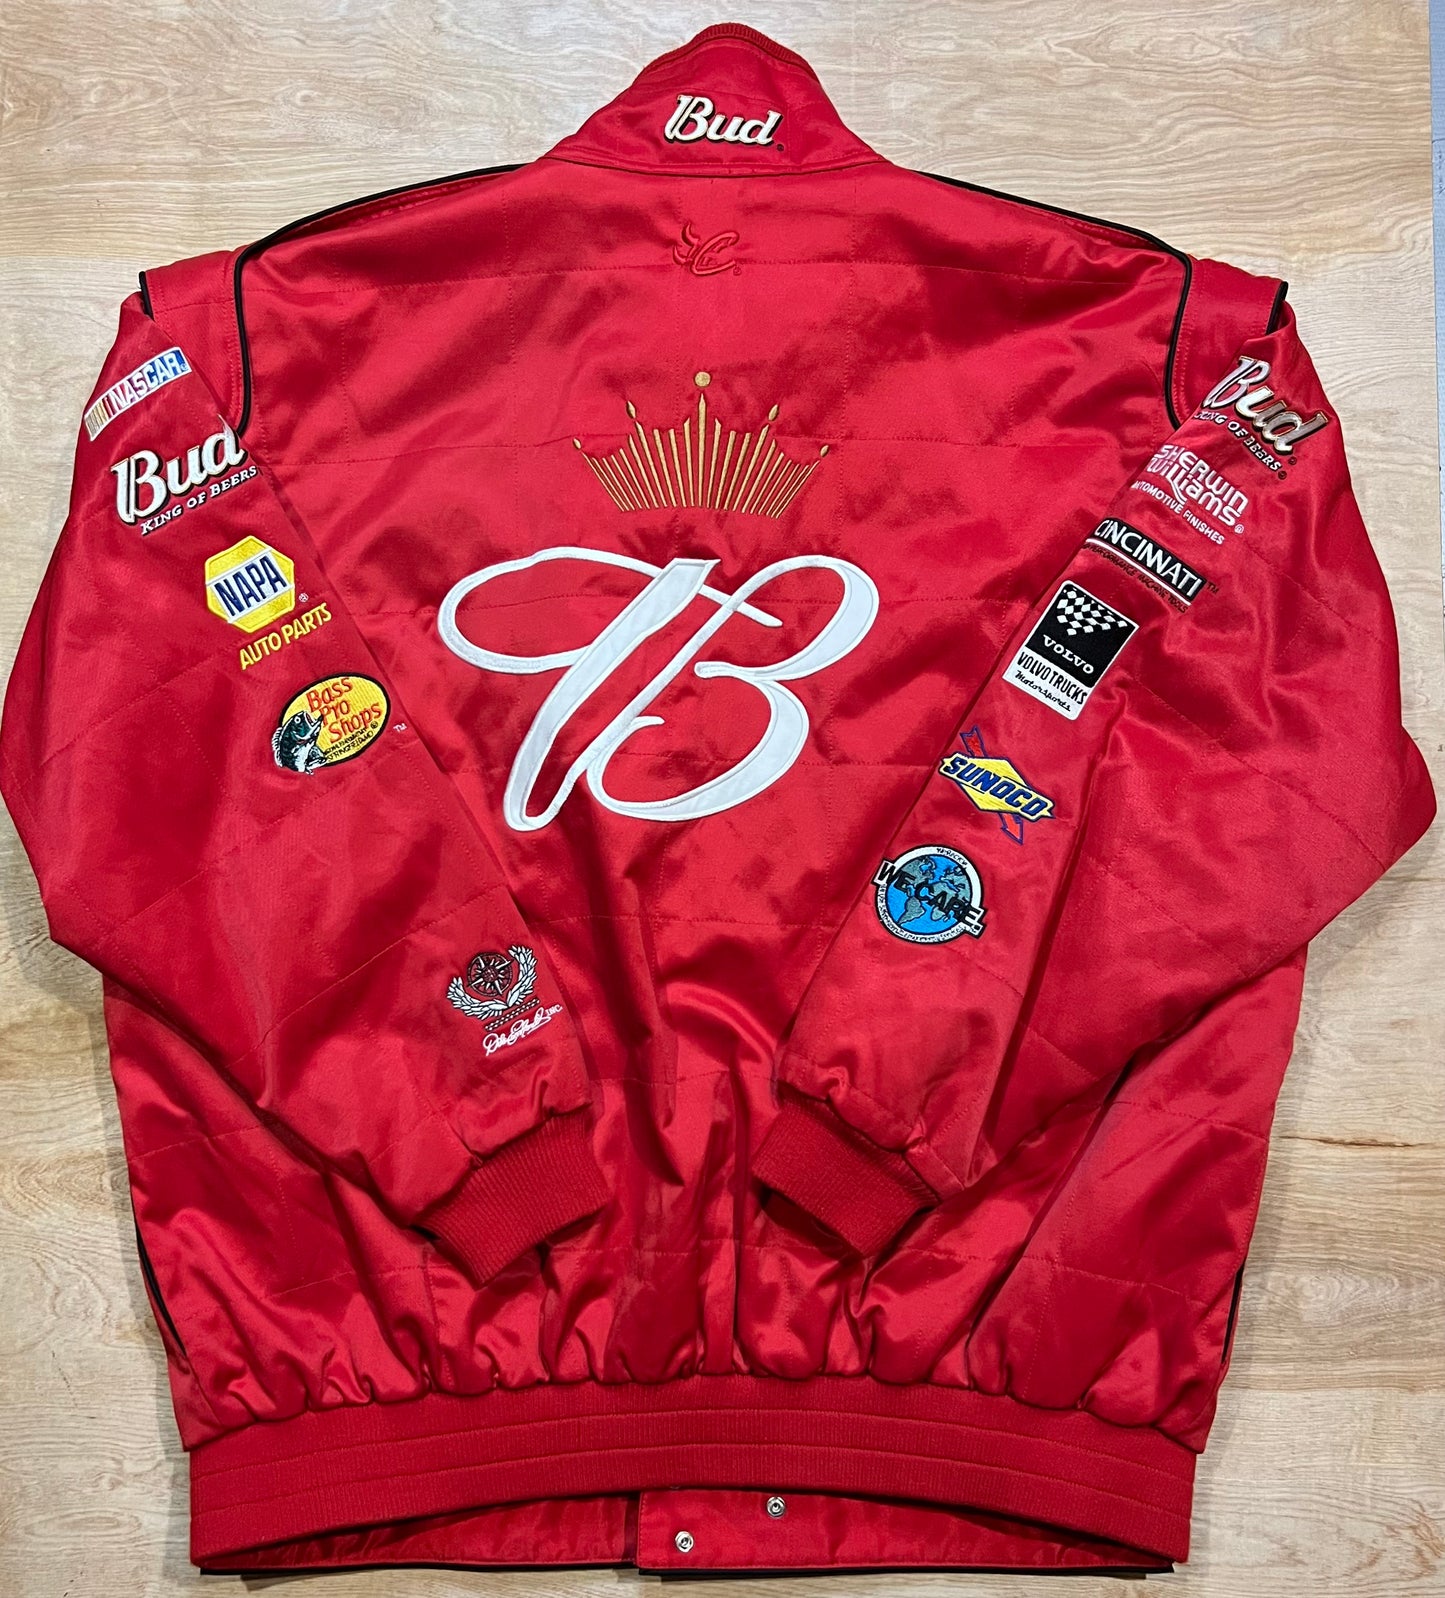 Vintage Bud King of Beers Dale Earnhardt Jr Racing Jacket